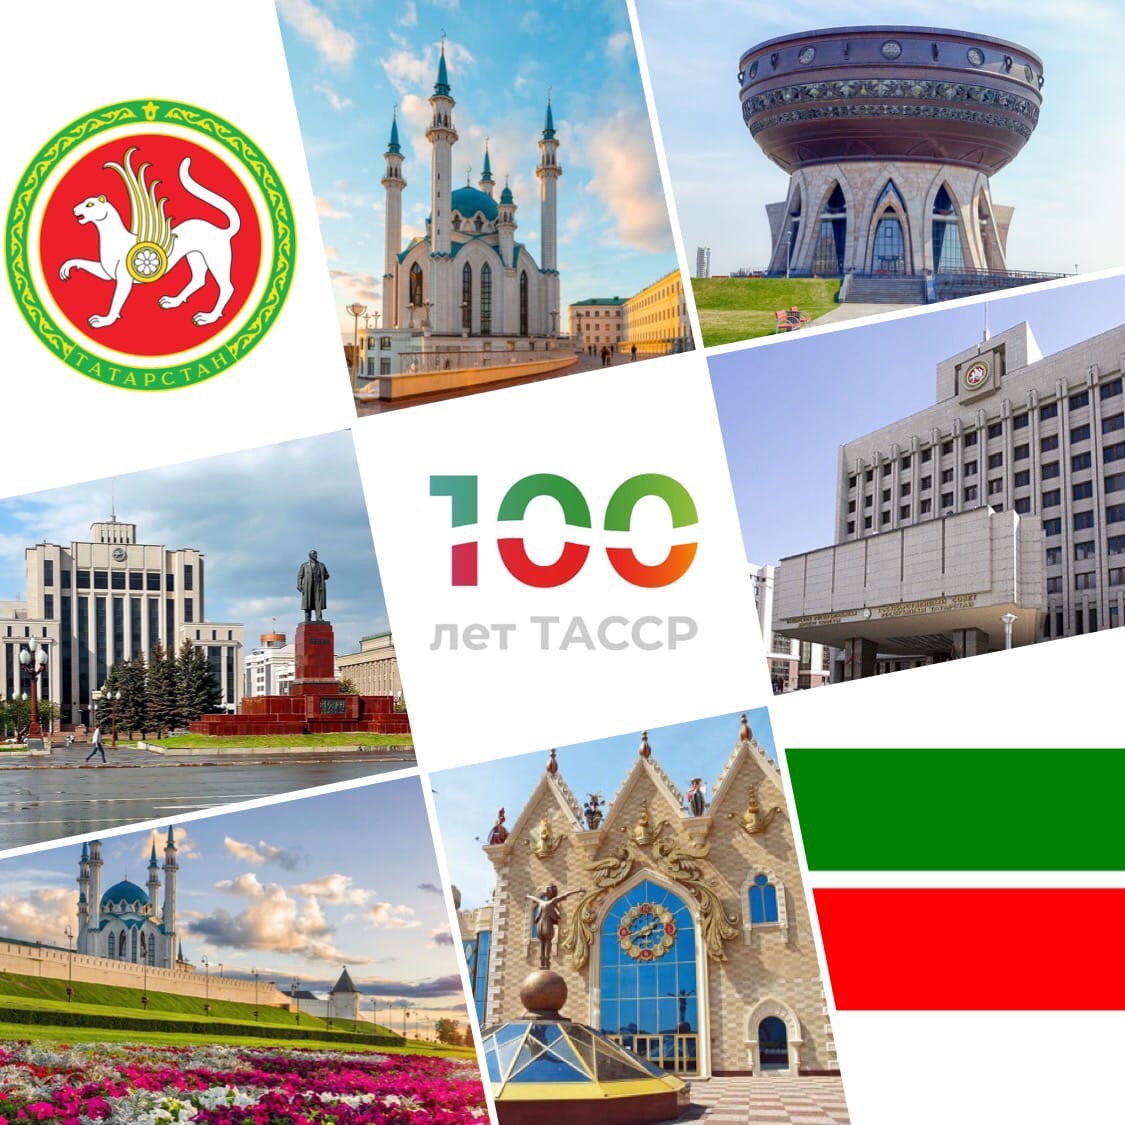 Уважаемые жители Татарстана, поздравляю вас с Днем Республики!